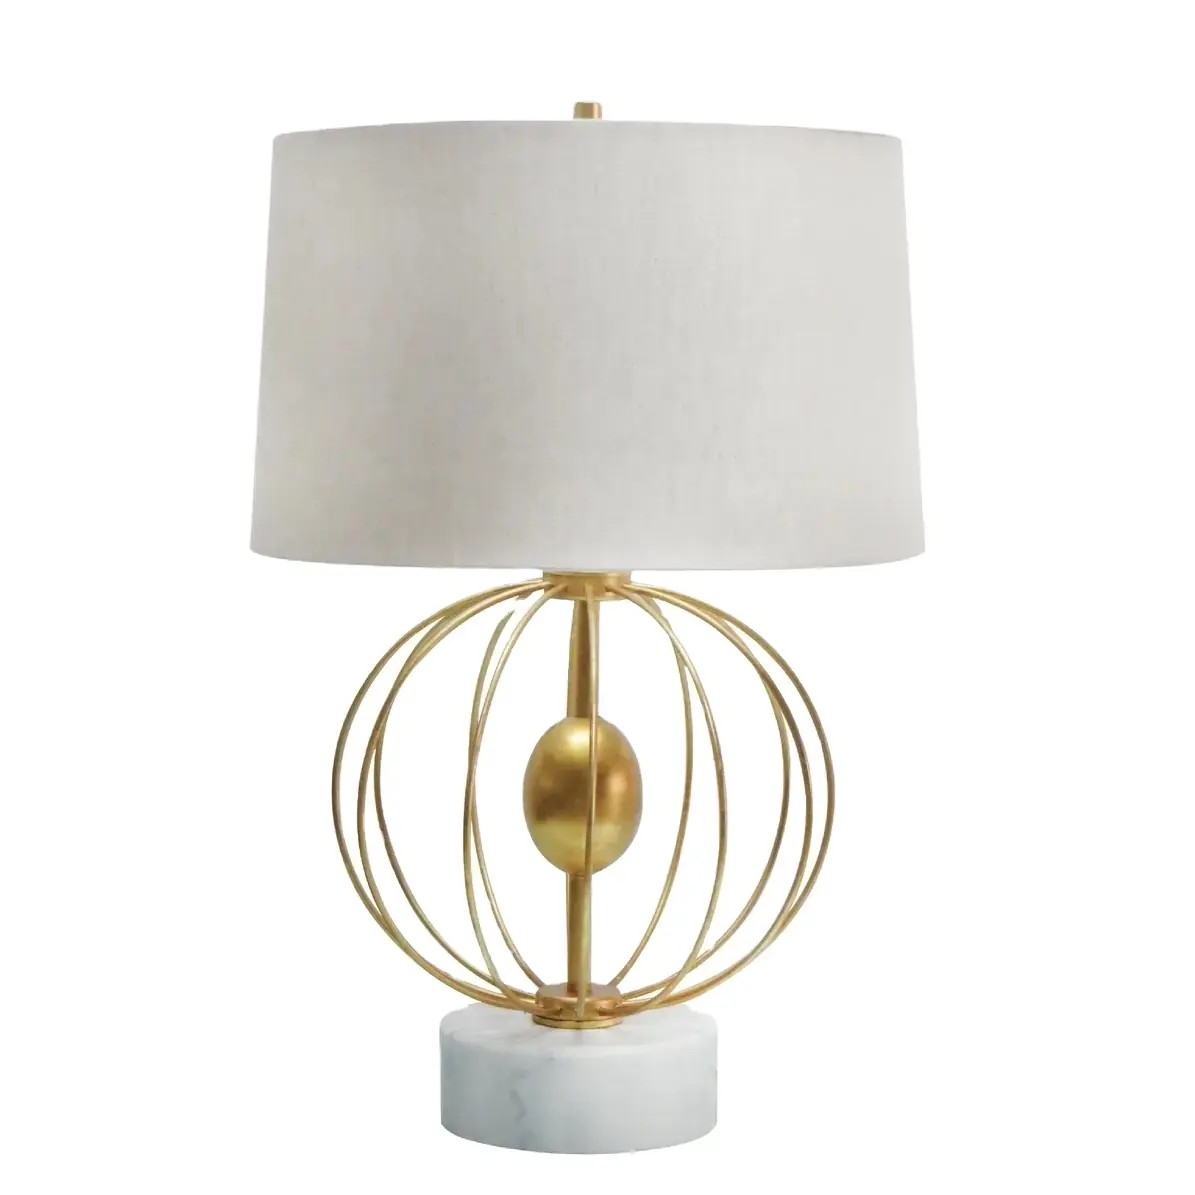 Современная настольная лампа высокого качества для гостиной, распродажа, металлическая, золотая, старинная проволока, дизайн с мраморной основой